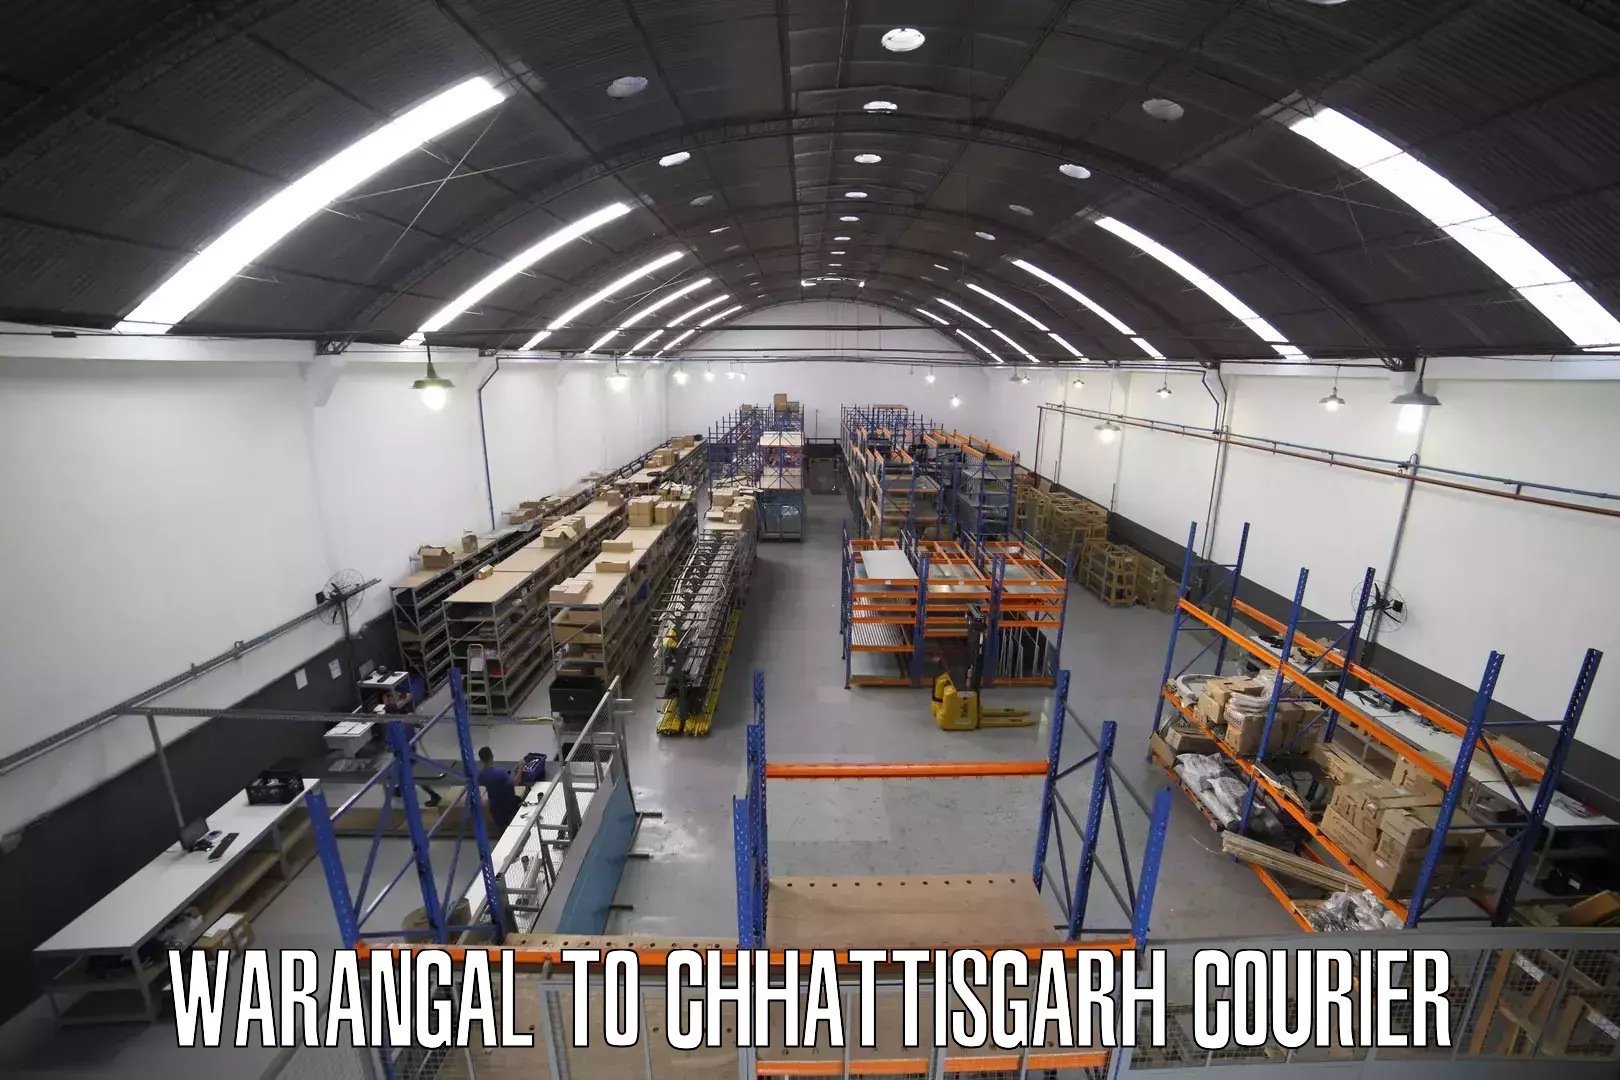 Courier app Warangal to Bijapur Chhattisgarh